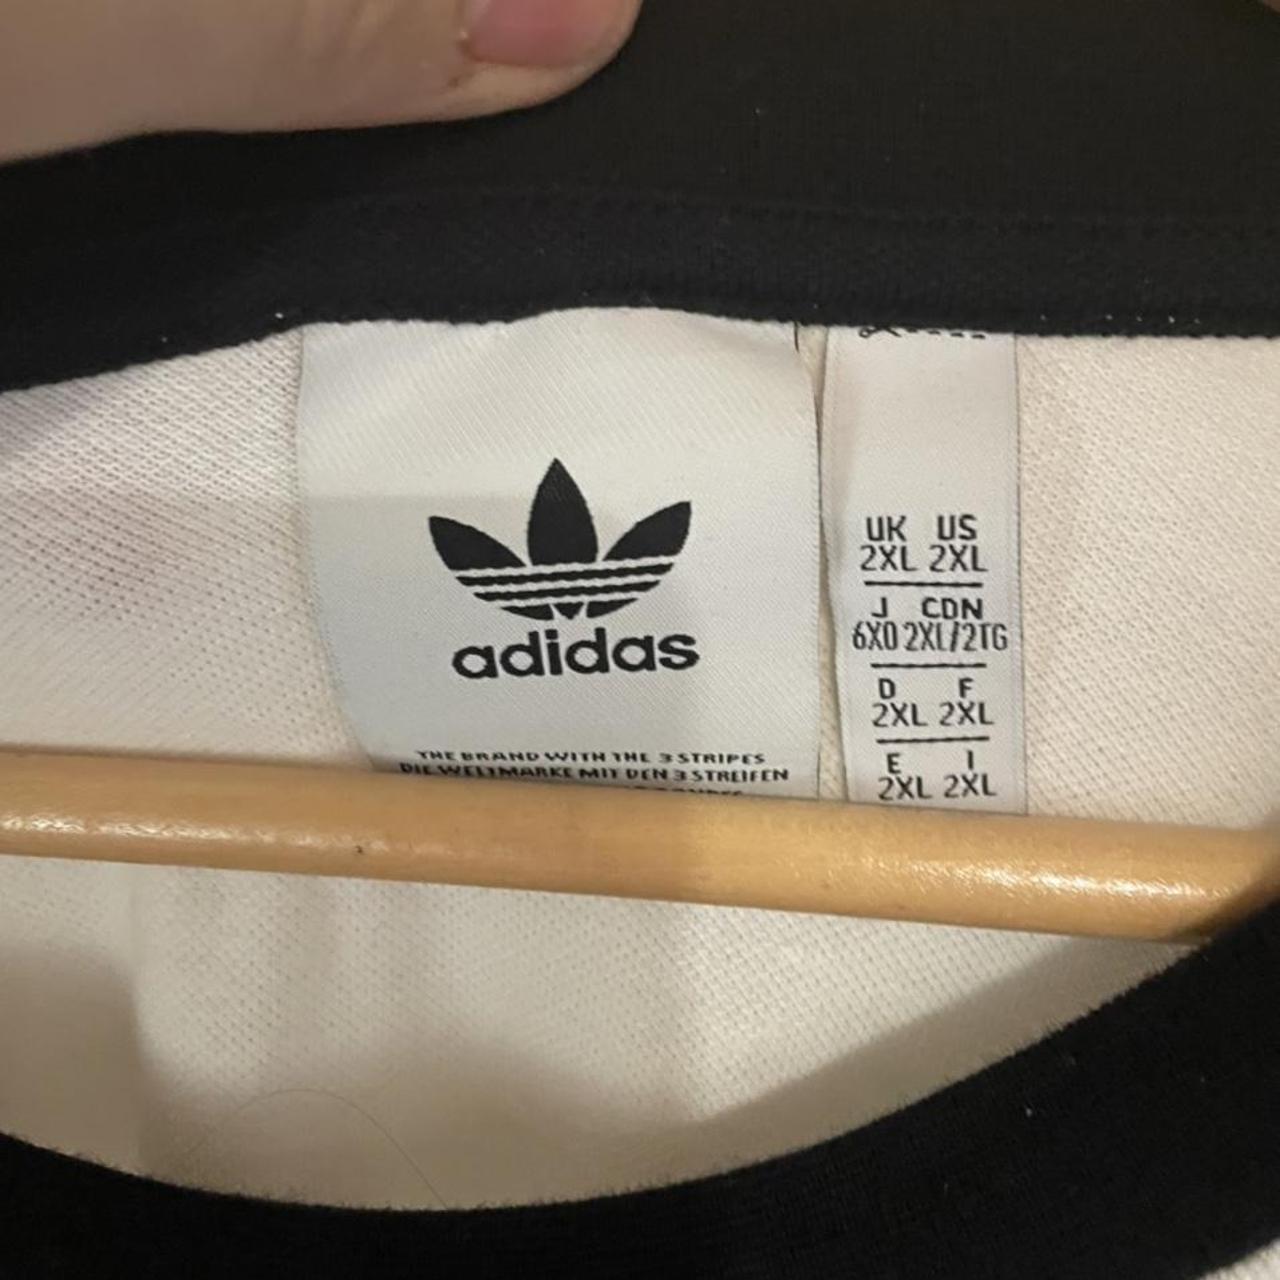 Adidas originals long sleeve shirt size Xxl never... - Depop